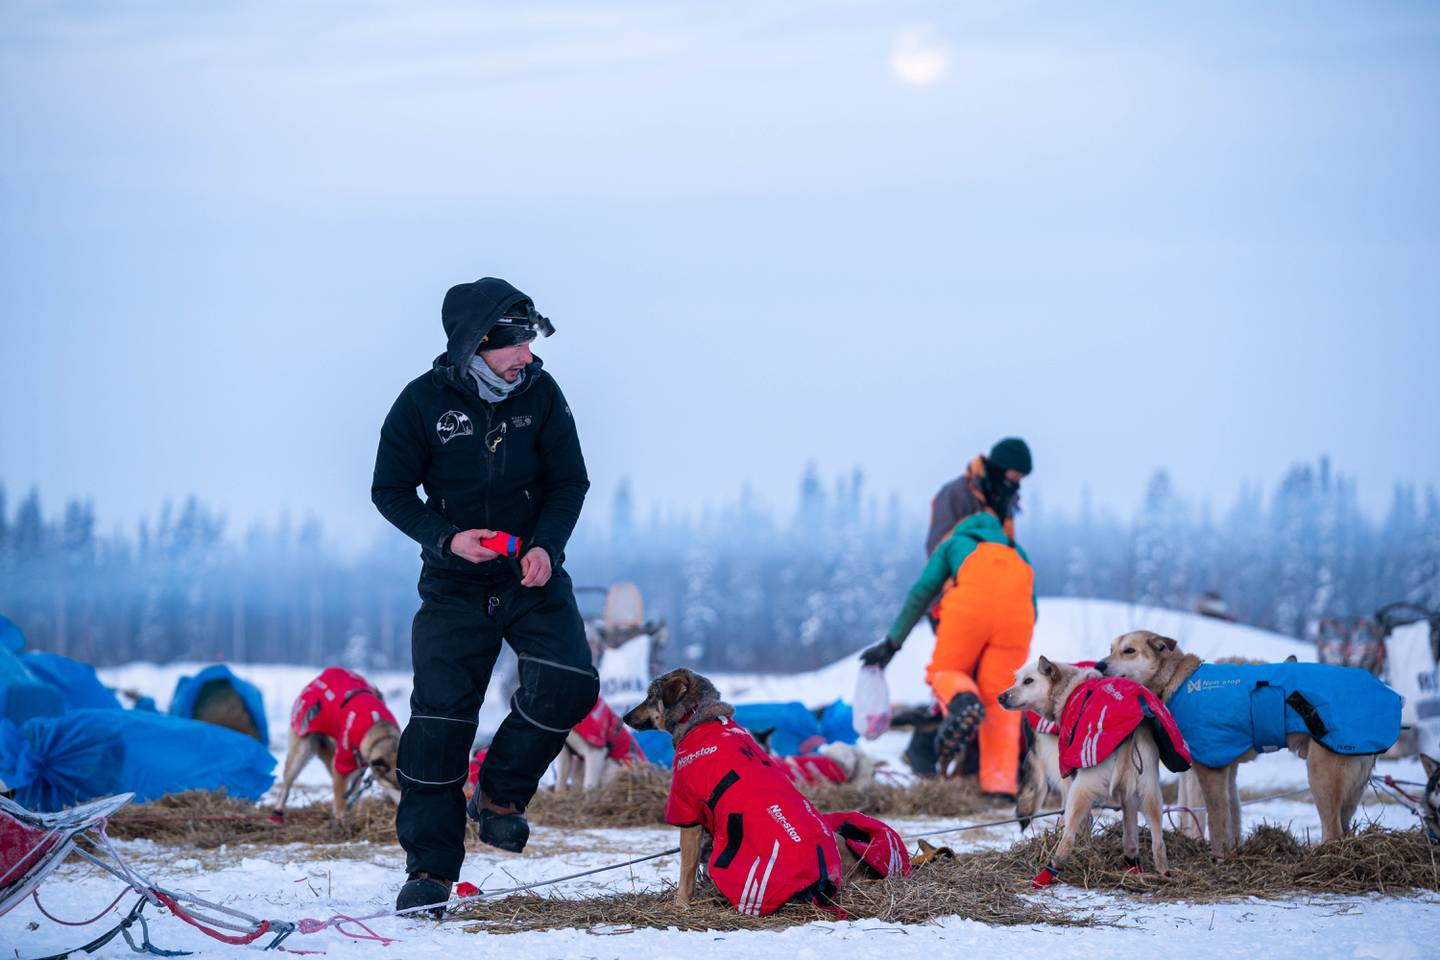 2020 Iditarod, Deke Naaktgeboren, Iditarod 2020, iditarod, nikolai